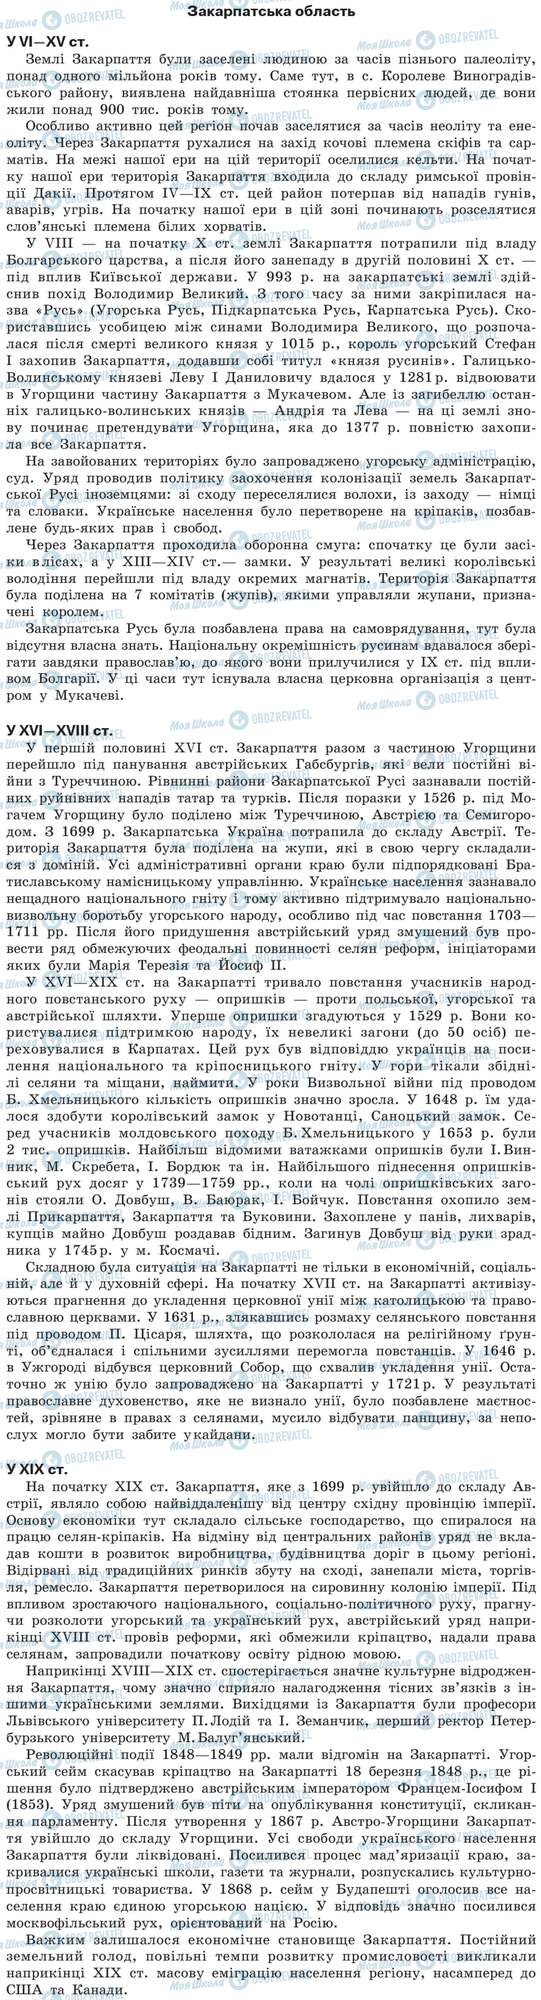 ДПА Історія України 9 клас сторінка Закарпатська область